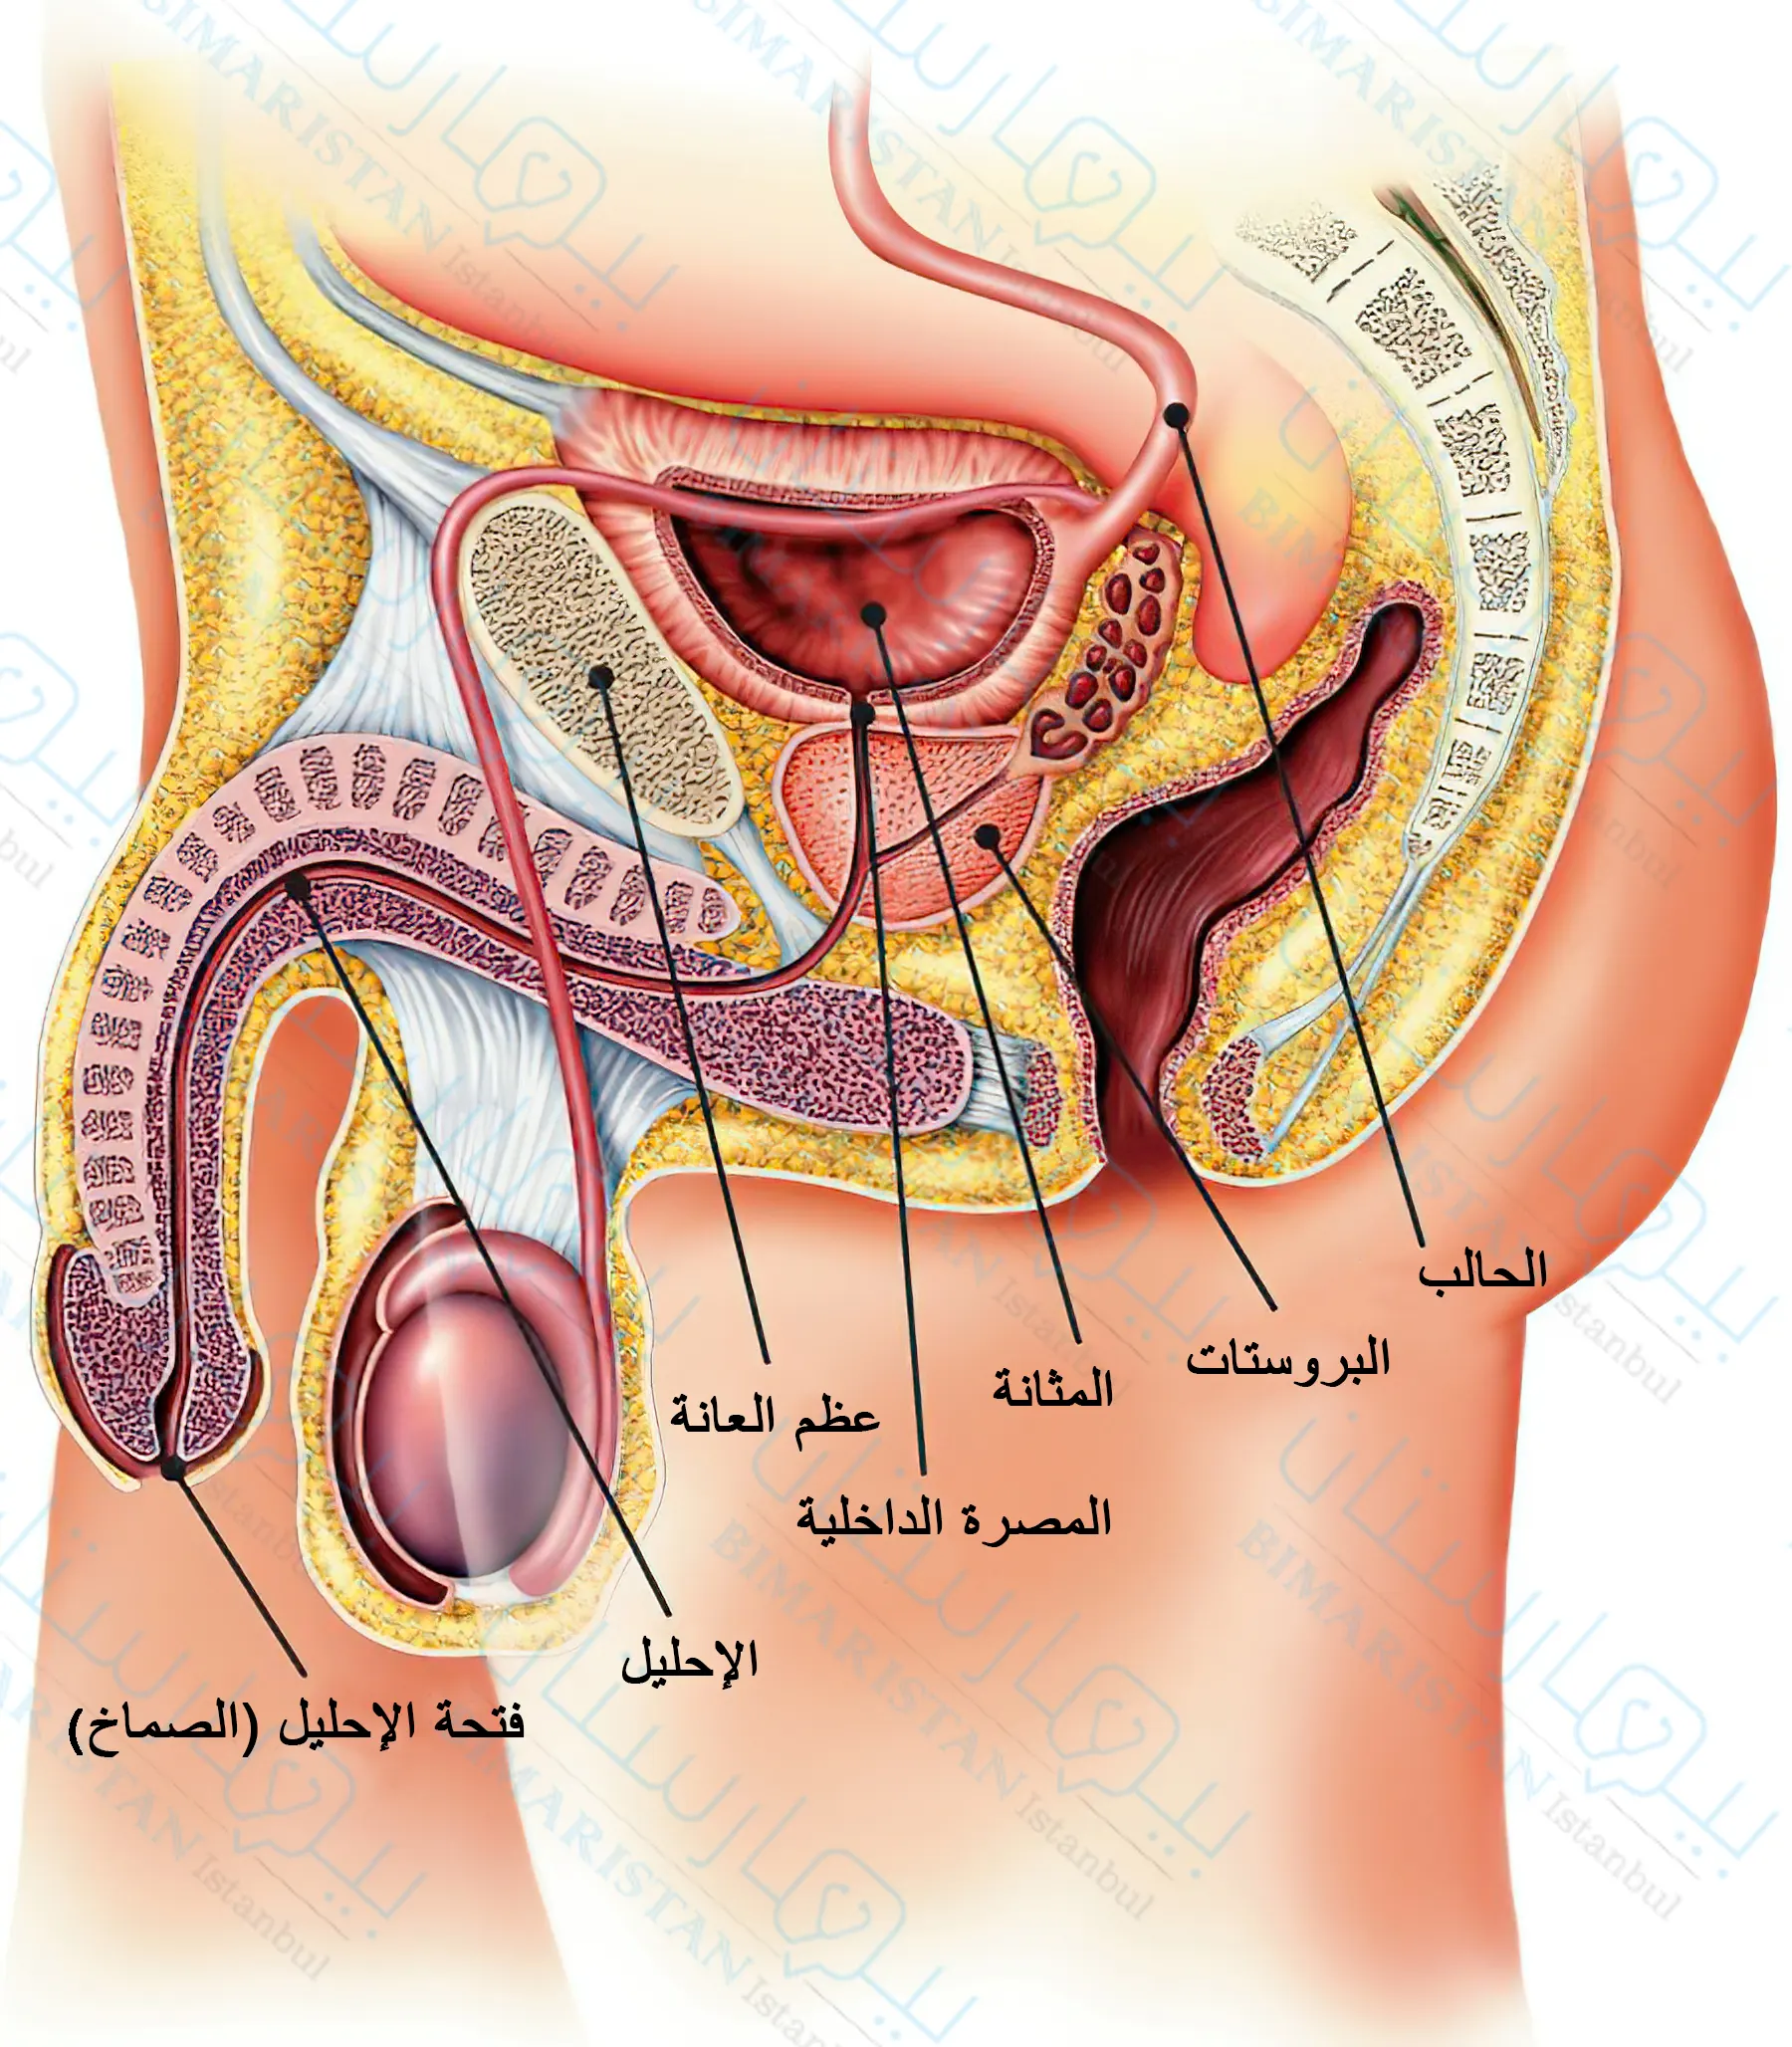 يتألف الجهاز البولي عند الذكون من الكلية والحالبين والمثانة والإحليل